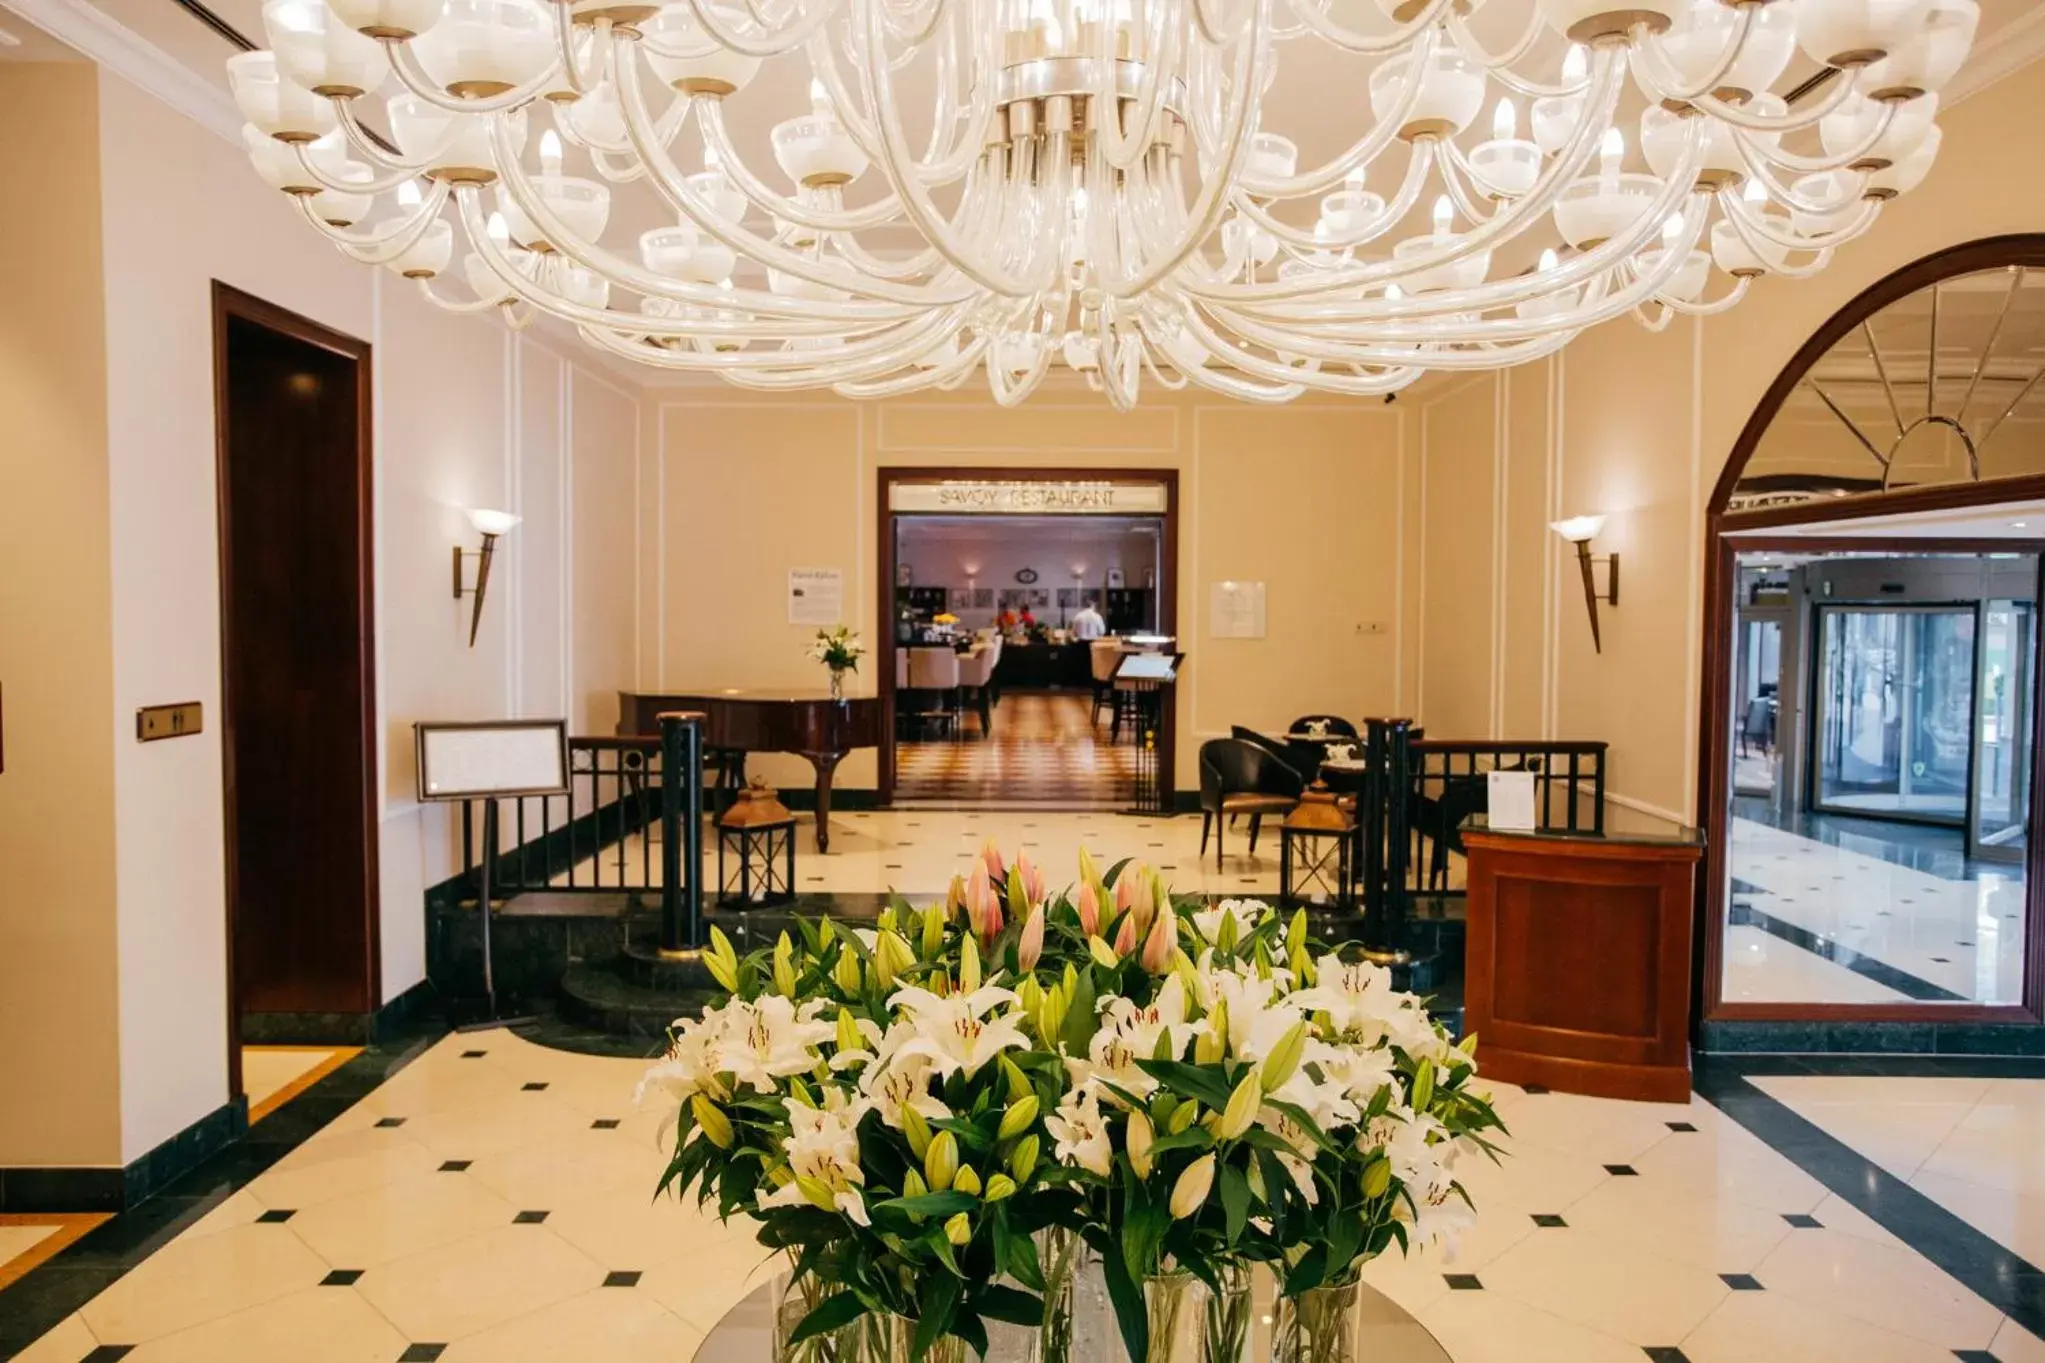 Lobby or reception, Lobby/Reception in Radisson Blu Carlton Hotel, Bratislava